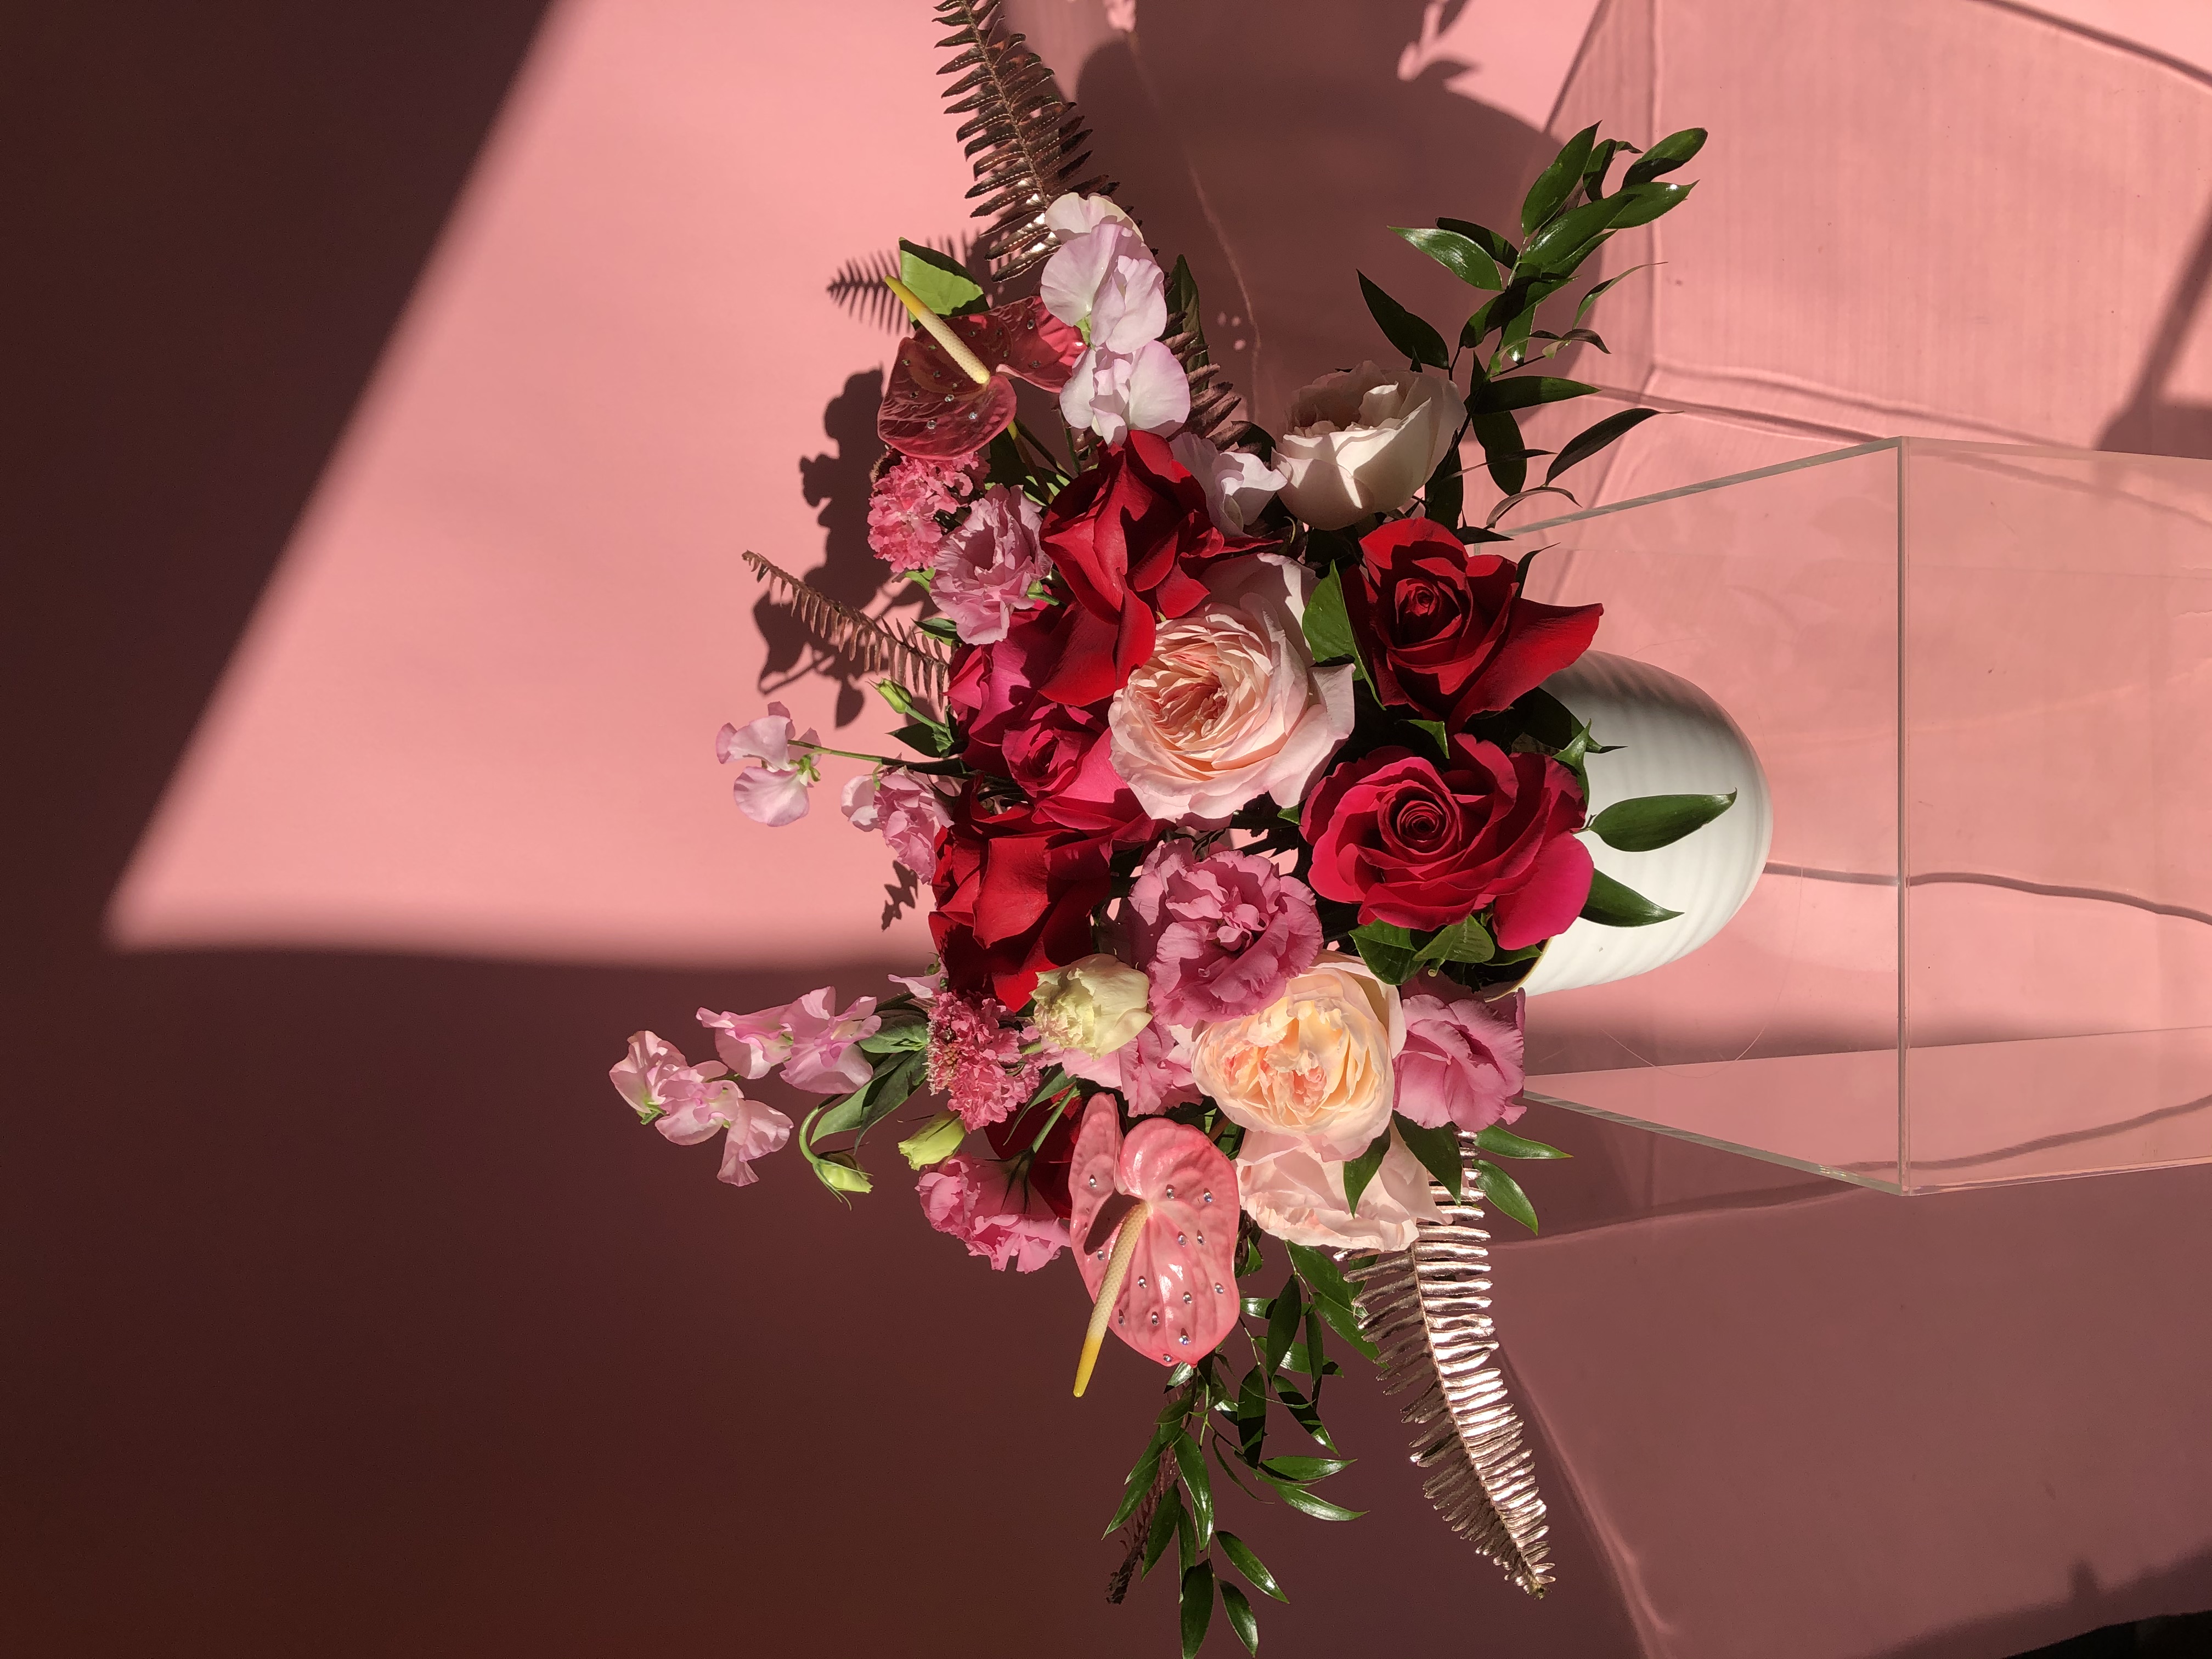 Miss Daisy Floral - Home - Premier Floral Design Studio in Las Vegas